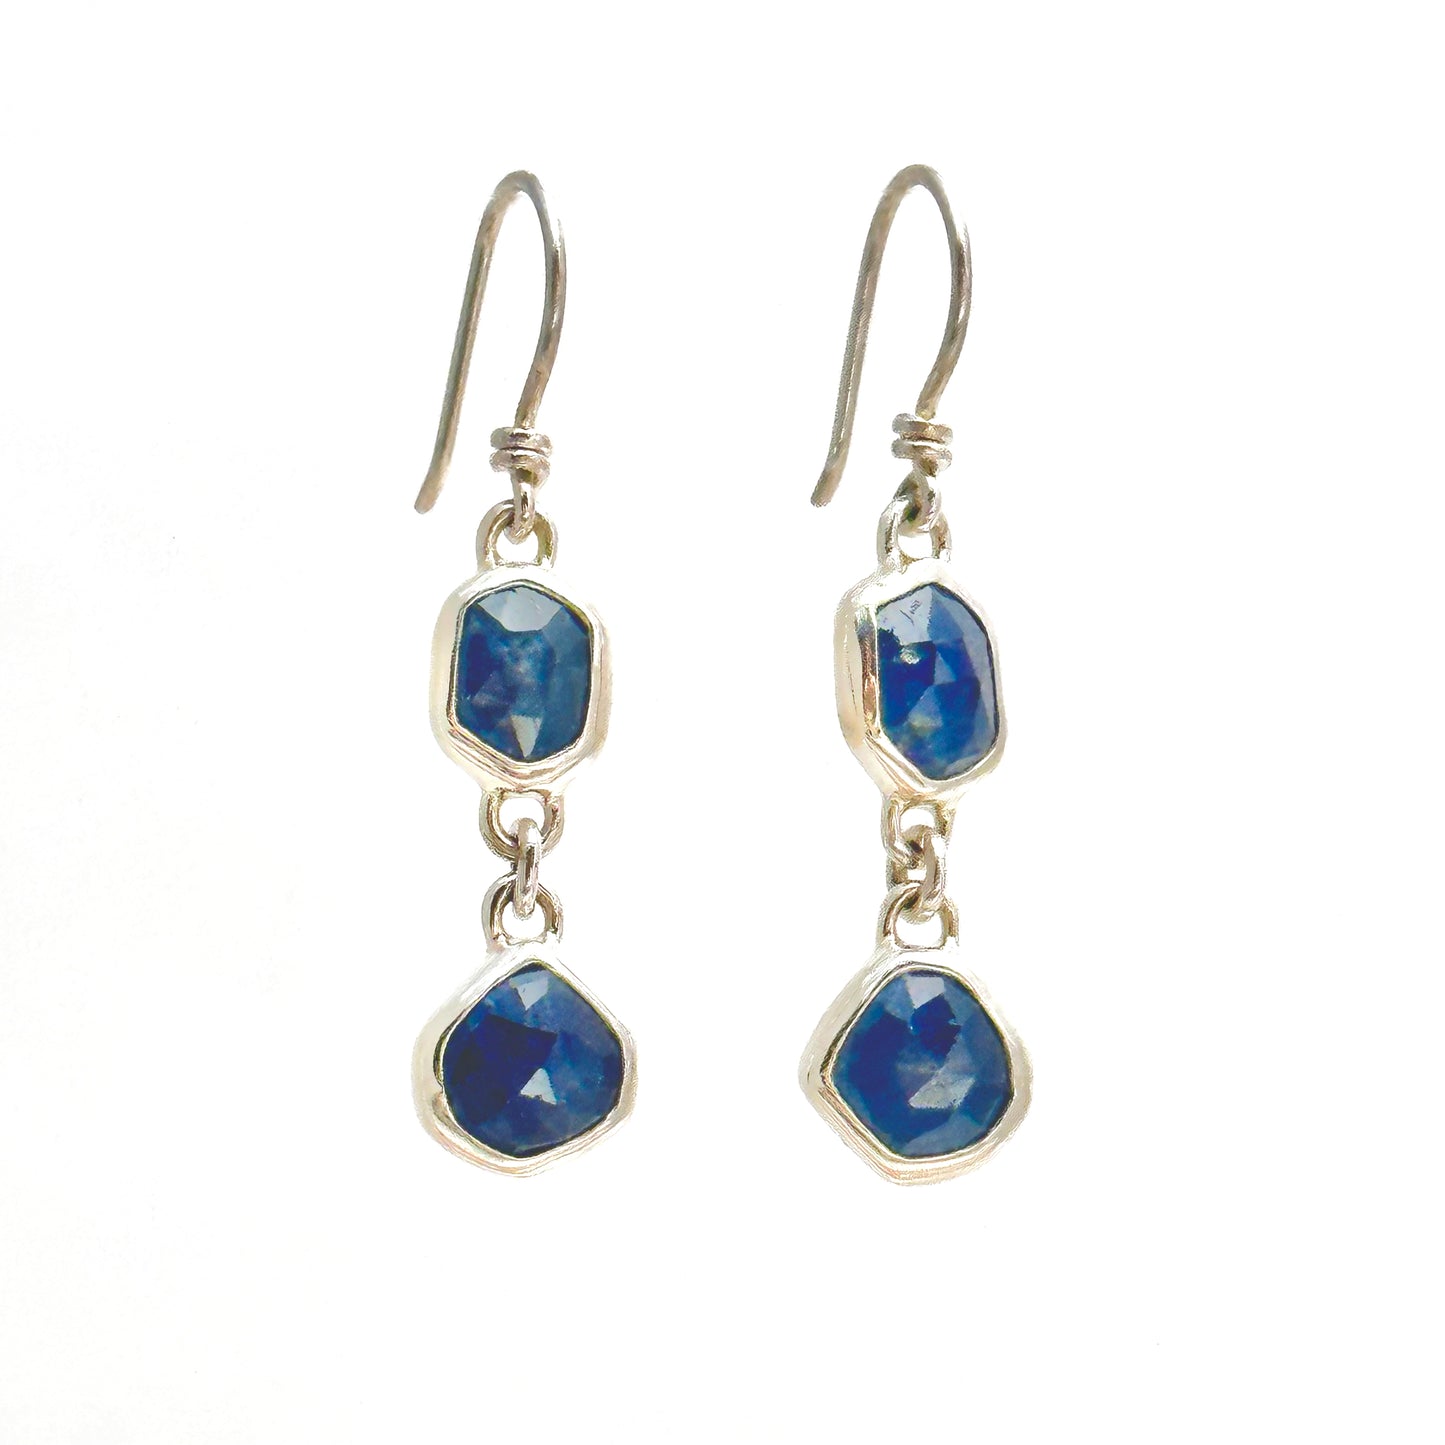 Jean Blue Sapphire Double Drop Earrings